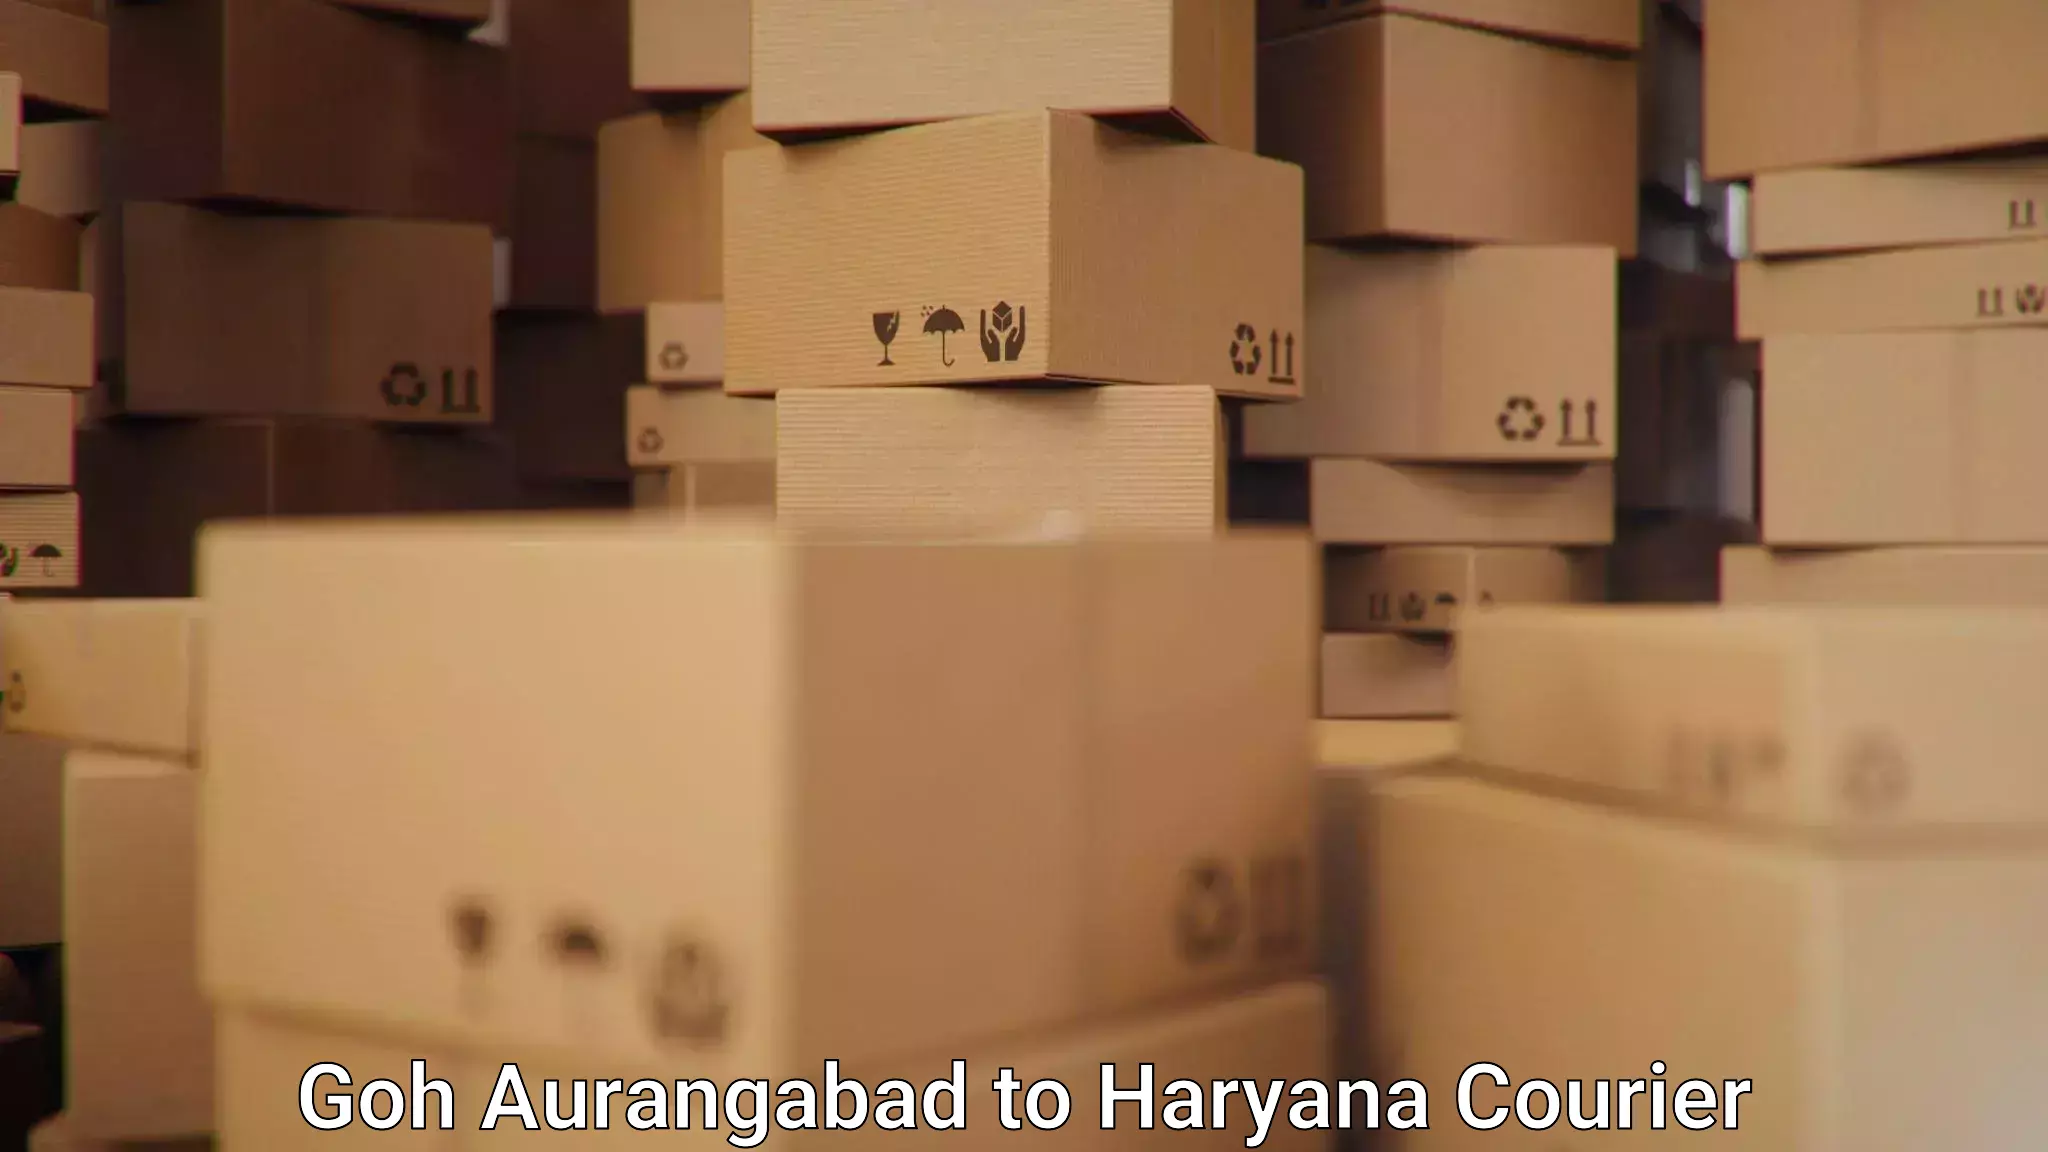 Automated shipping processes Goh Aurangabad to Ambala